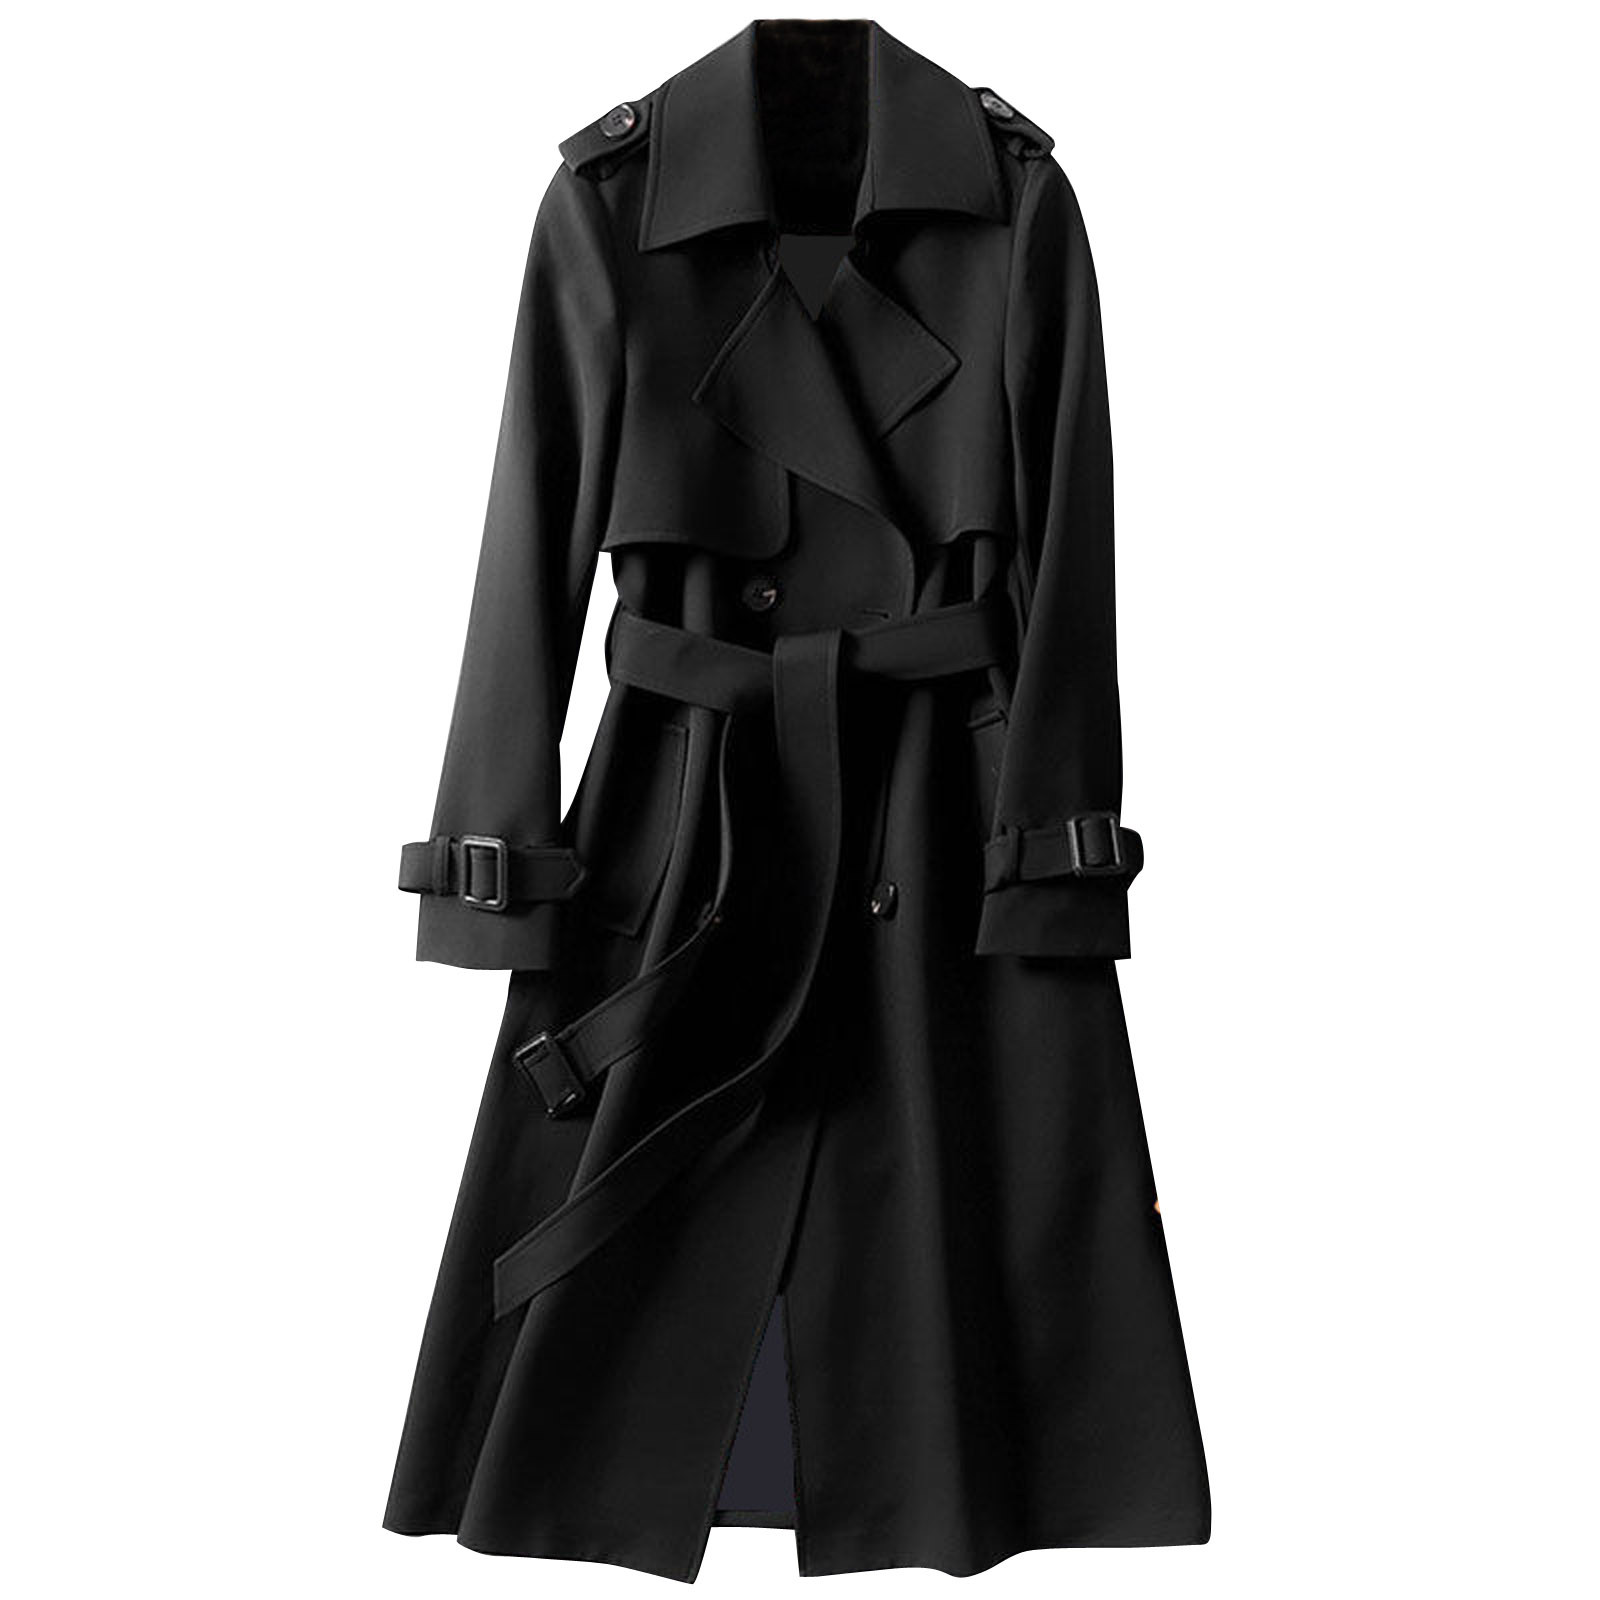 Mnycxen Women Overcoat Solid Slim Fit Coat Jacket Long Outerwear Windbreaker Trench - image 1 of 3